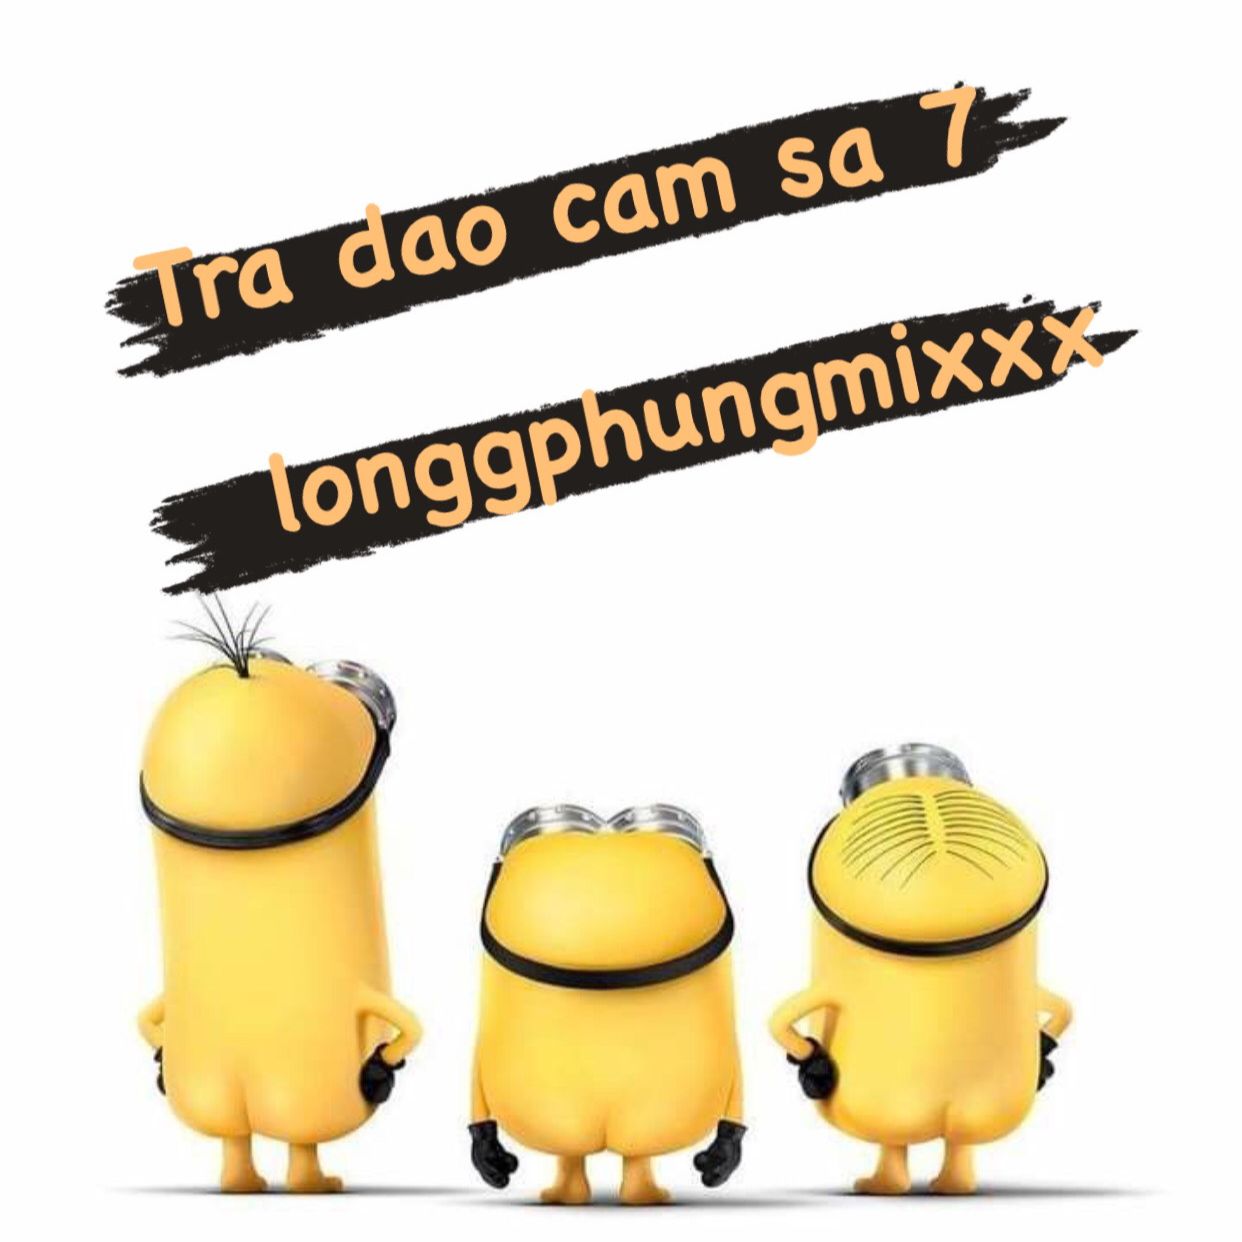 ડાઉનલોડ કરો Tra Dao Cam Sa 7 - 132 longgphungmixxx